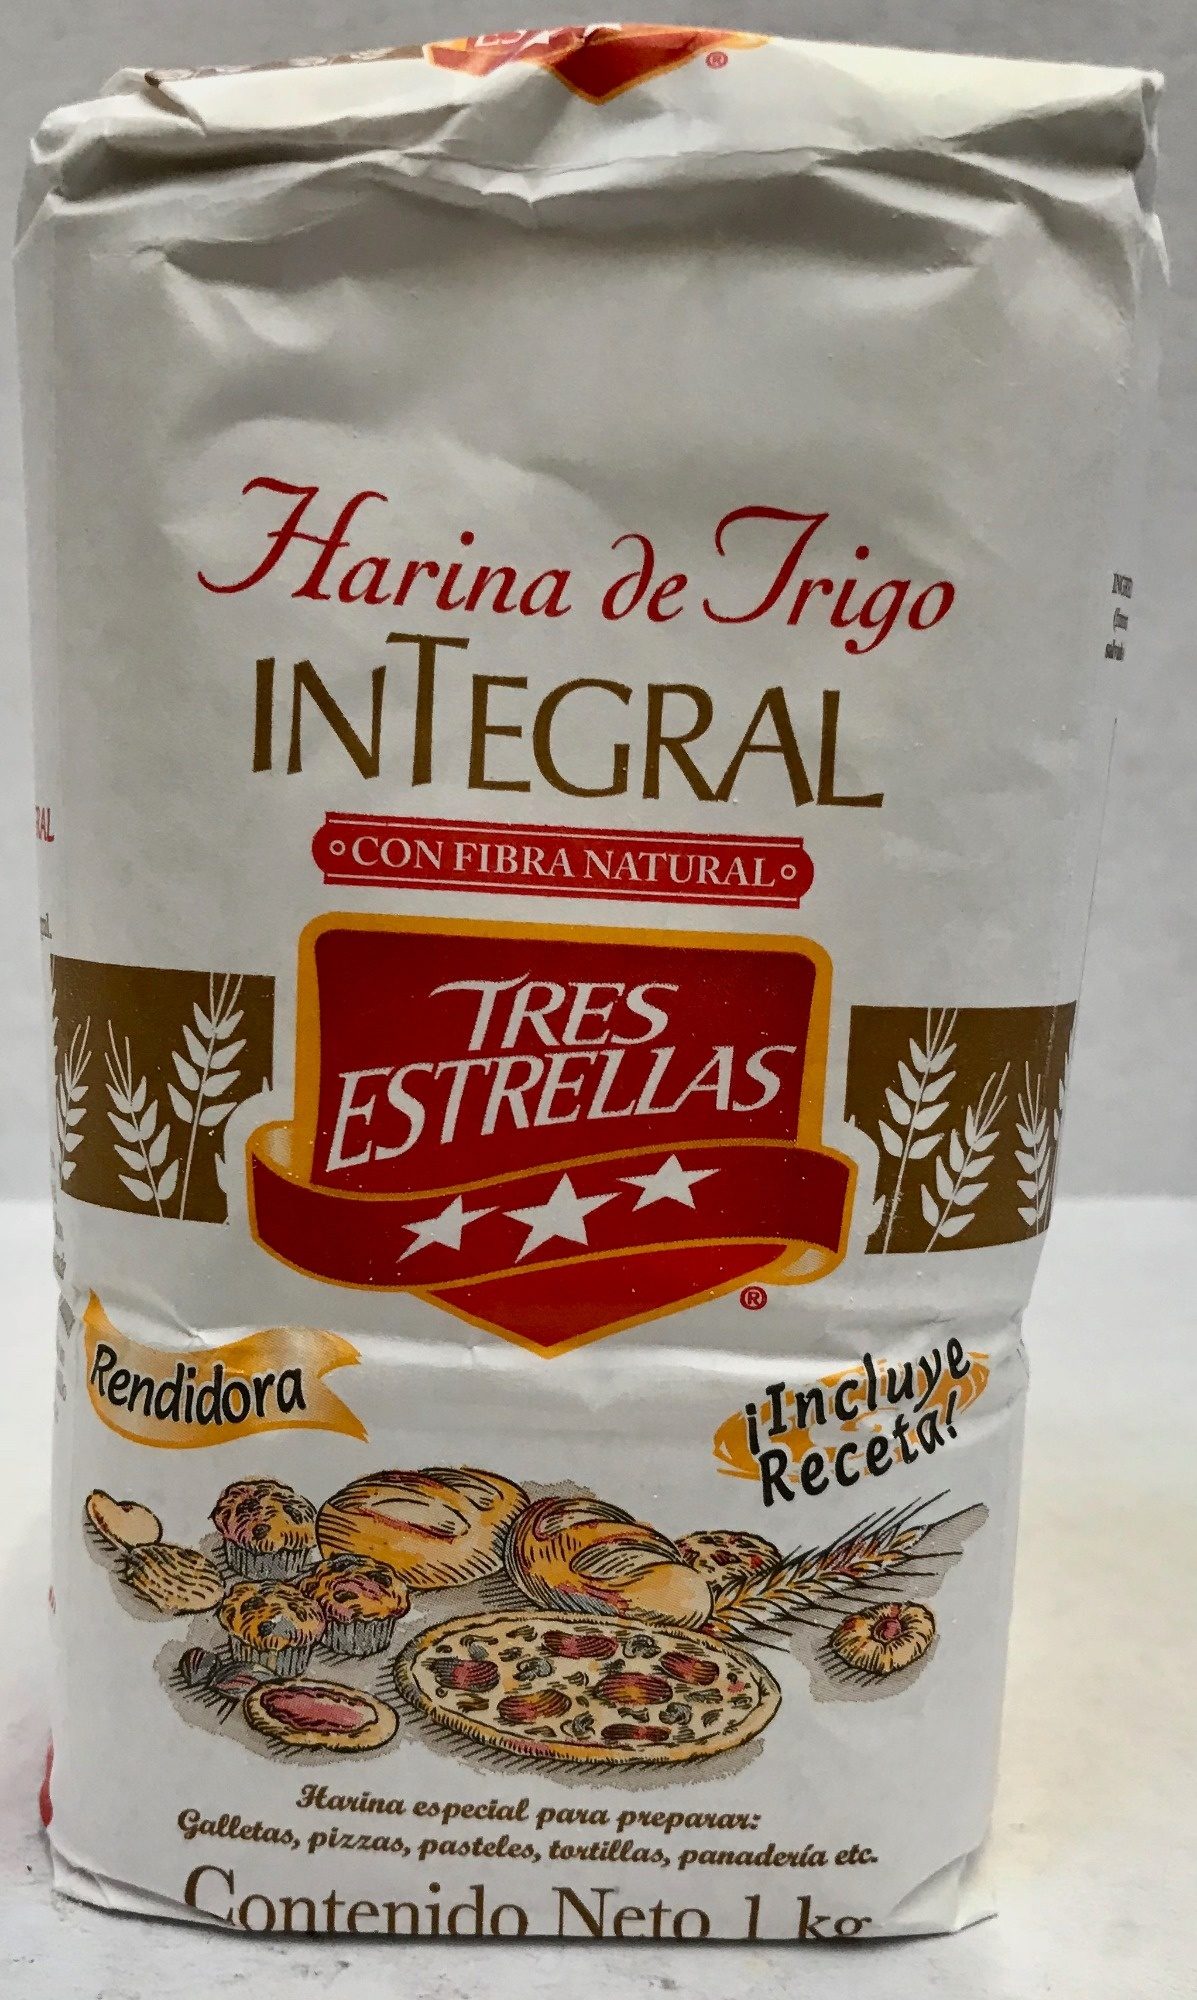 Harina de trigo integral - Product - es